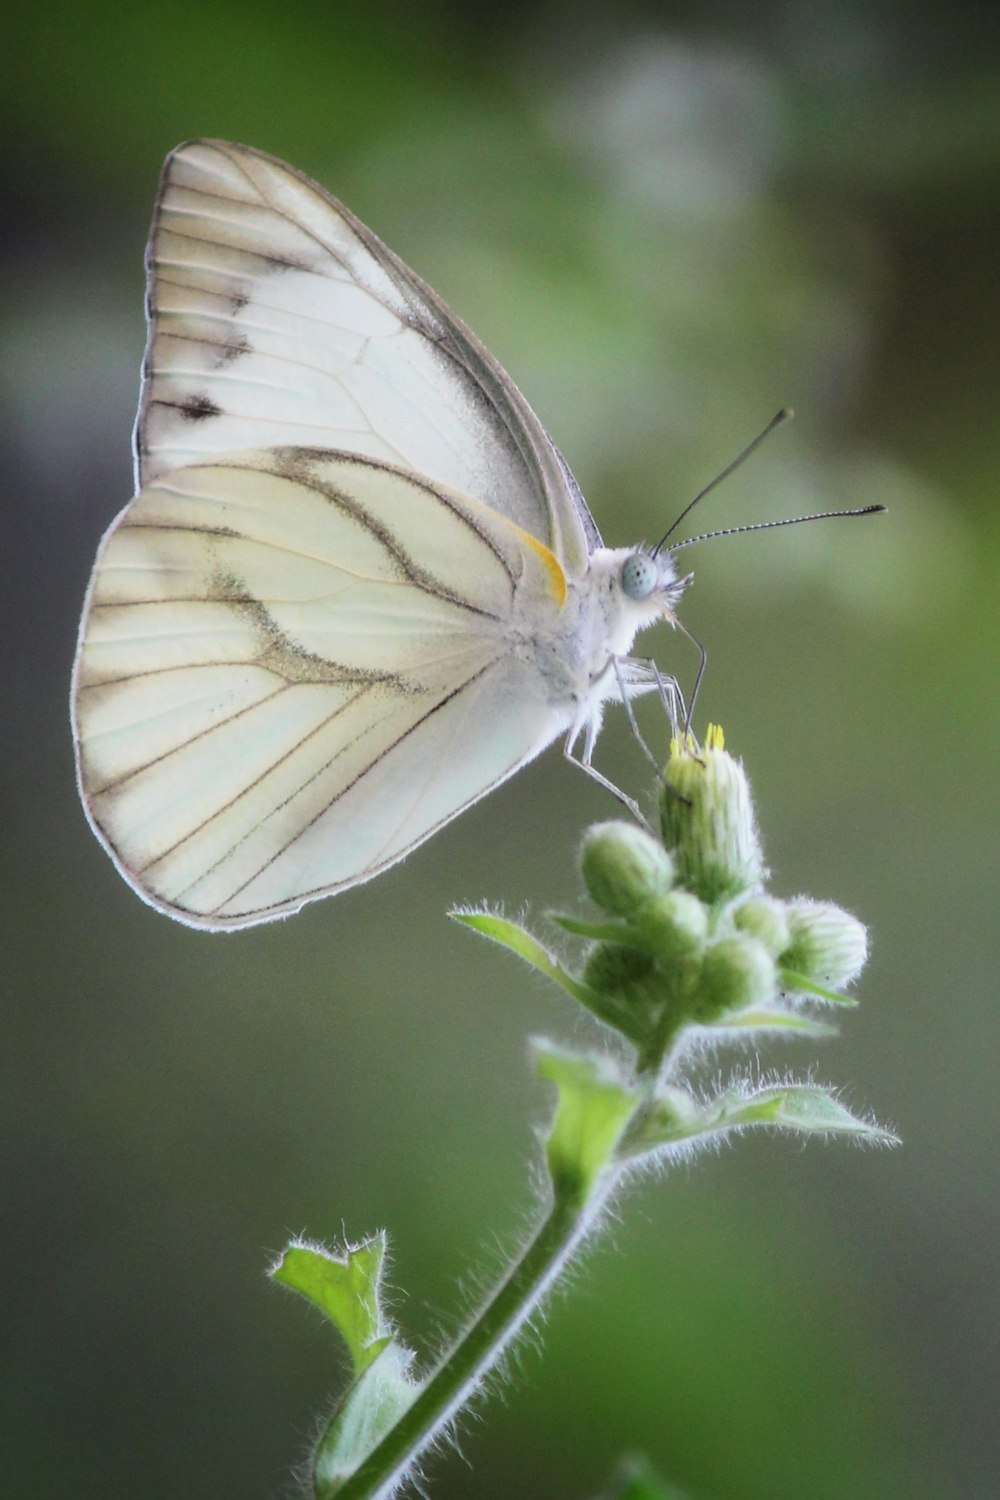 farfalla bianca e grigia appollaiata su pianta verde